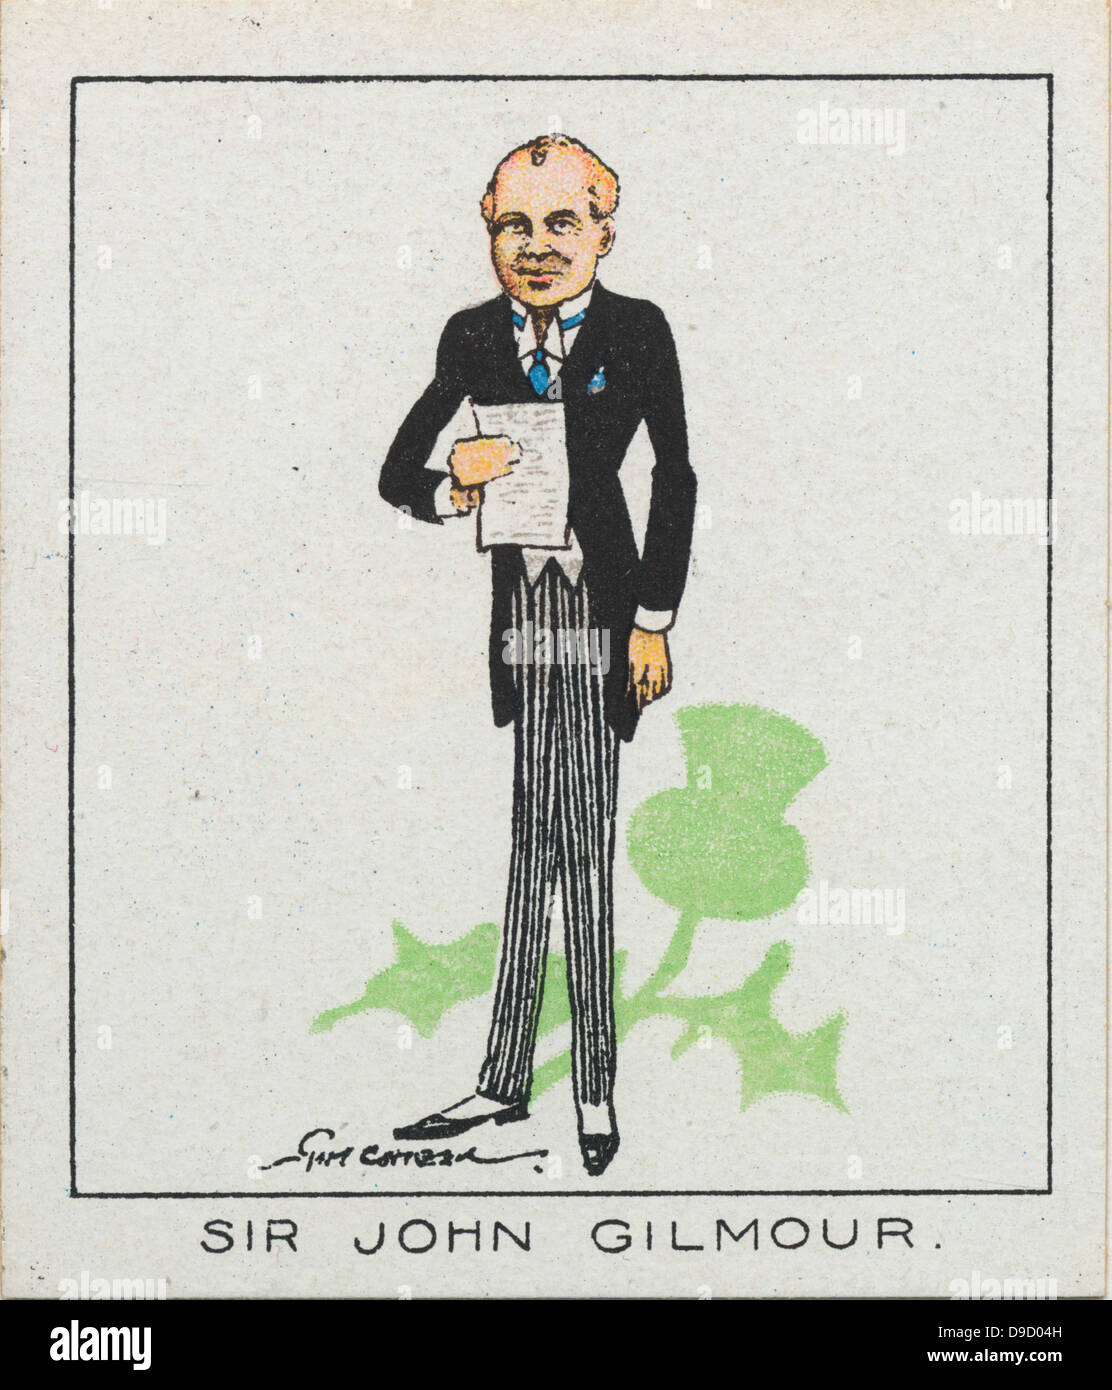 Lieut-Colonel John Gilmour, 2ème Baronet (1876-1940) soldat britannique et homme politique ScottishUnionist. Député de Glasgow Pollok 1918-1940. 1932-1935 Secrétaire d'accueil. Banque D'Images